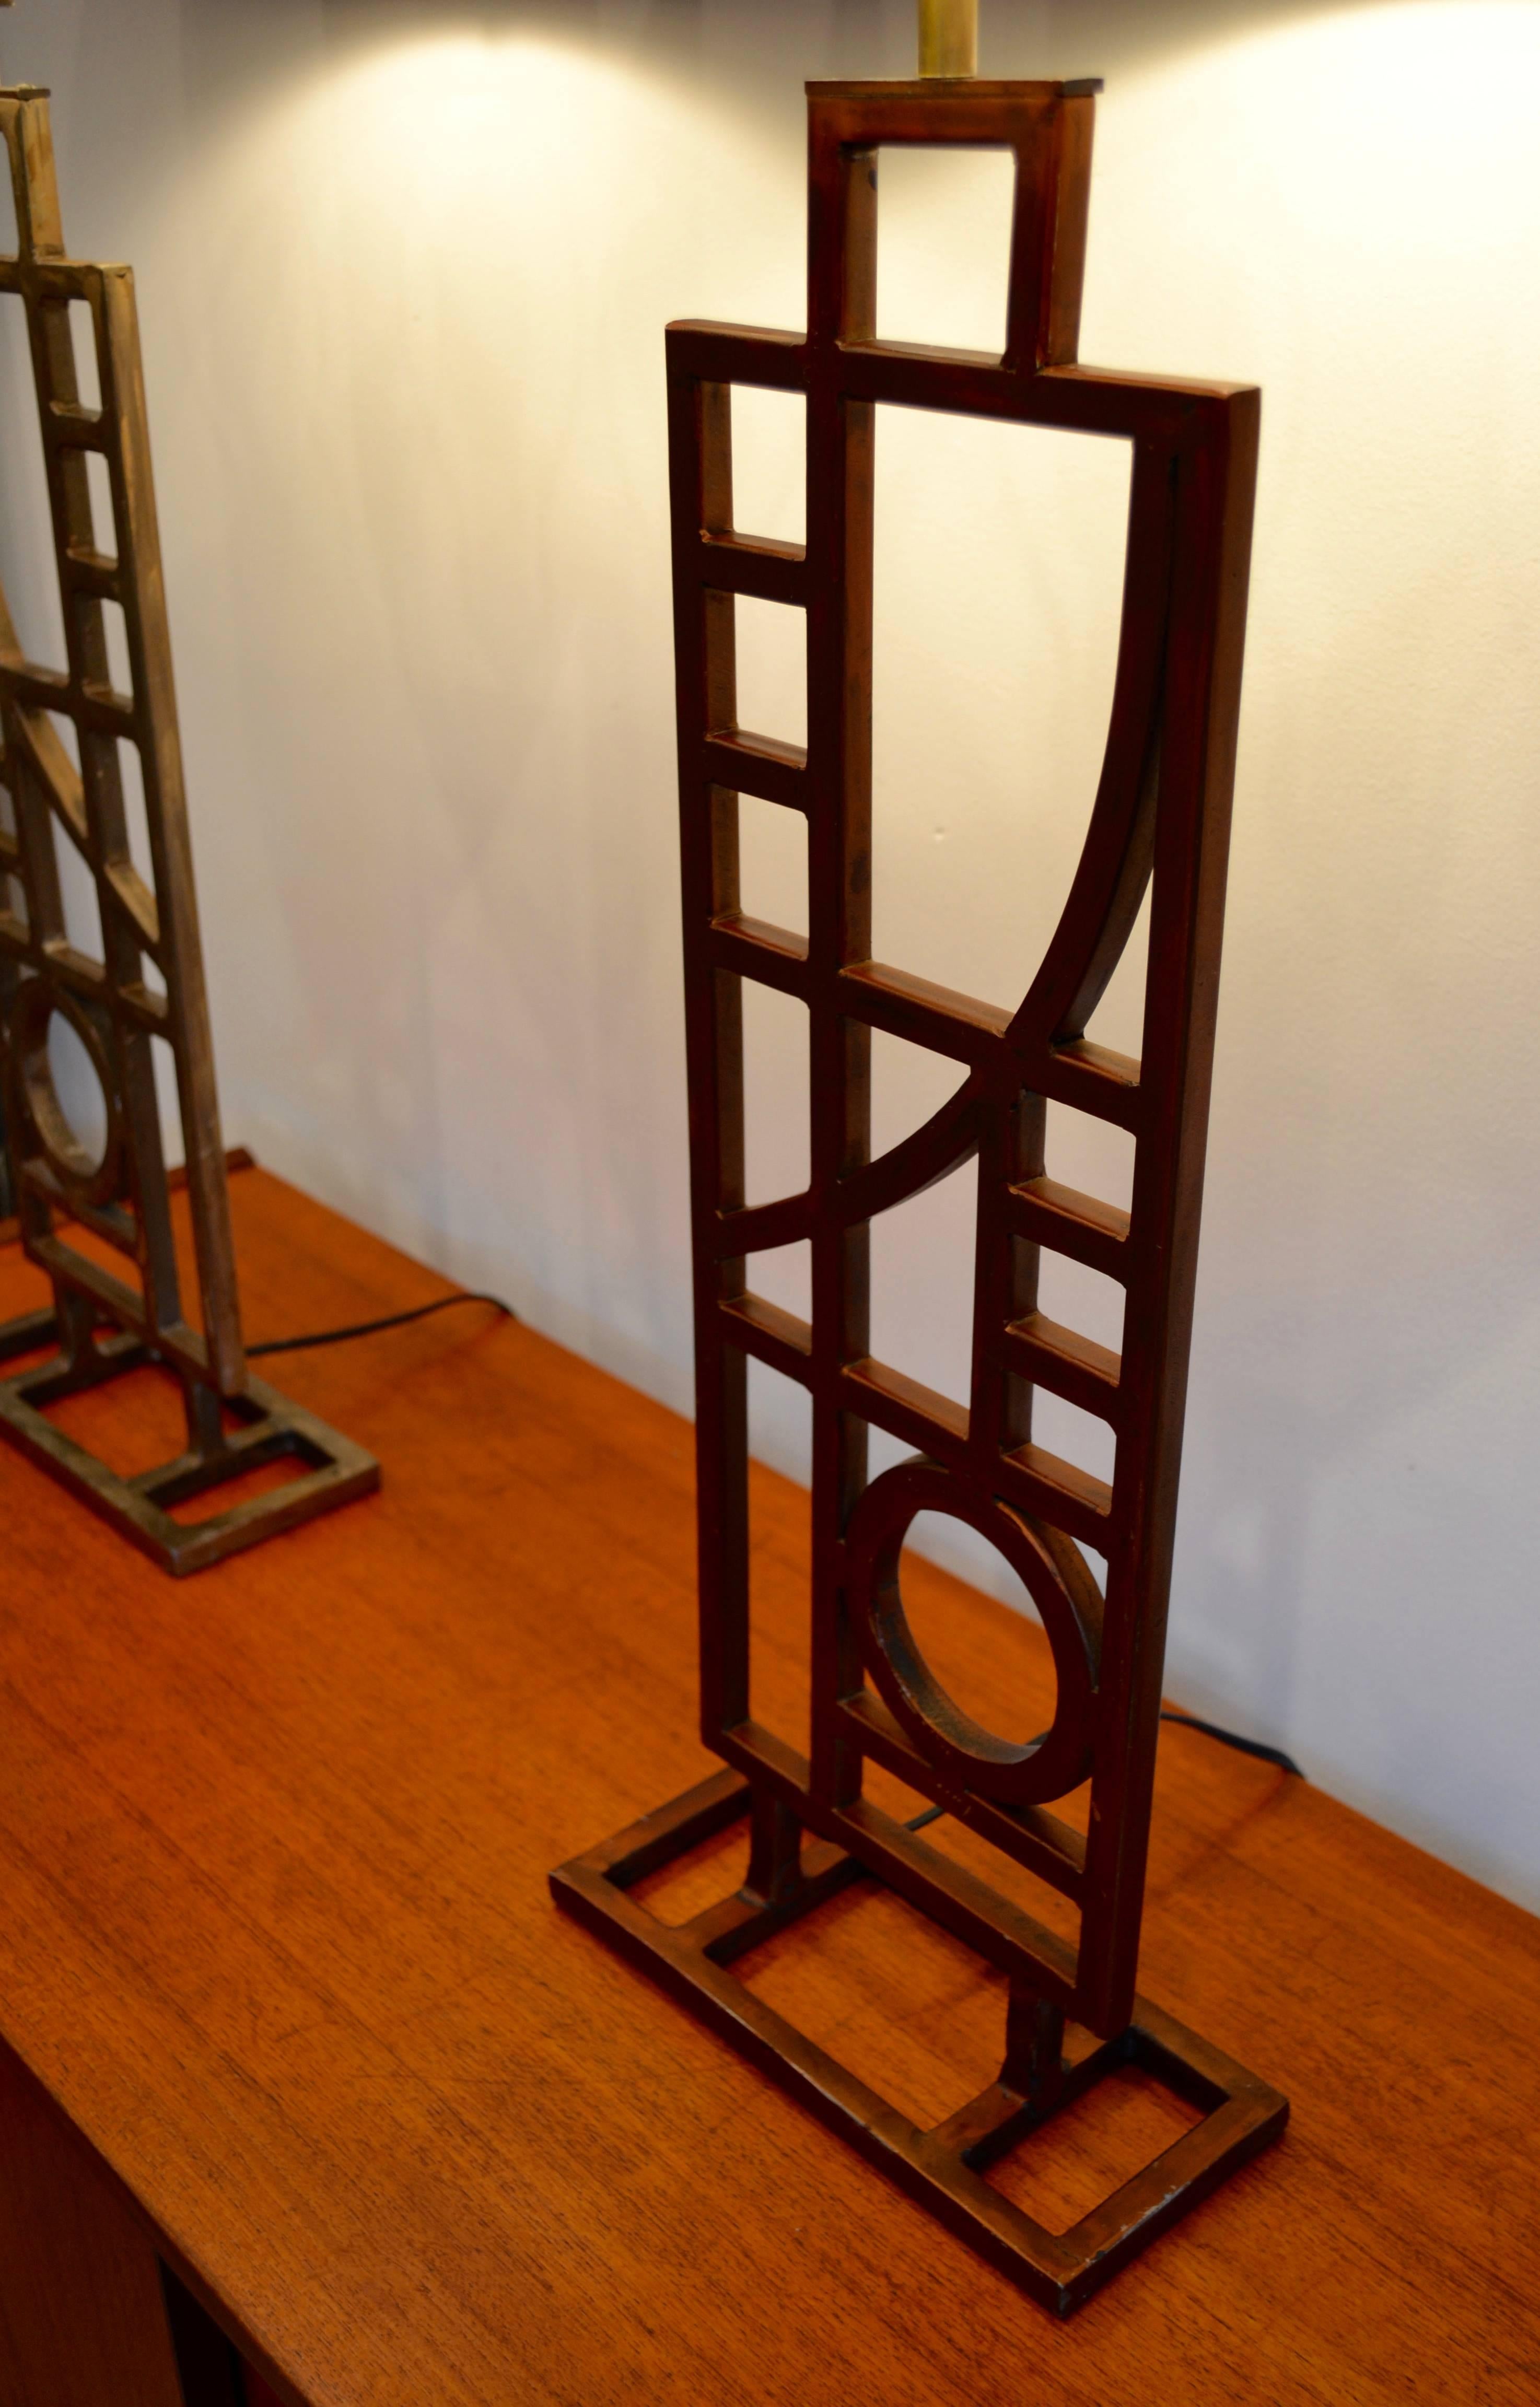 Paire de lampes de table postmodernes en cuivre et nickel bruni par Robert Sonneman pour George Kovacs. Les lampes ont été recâblées avec un raccord en laiton. Les abat-jour ne sont pas inclus.